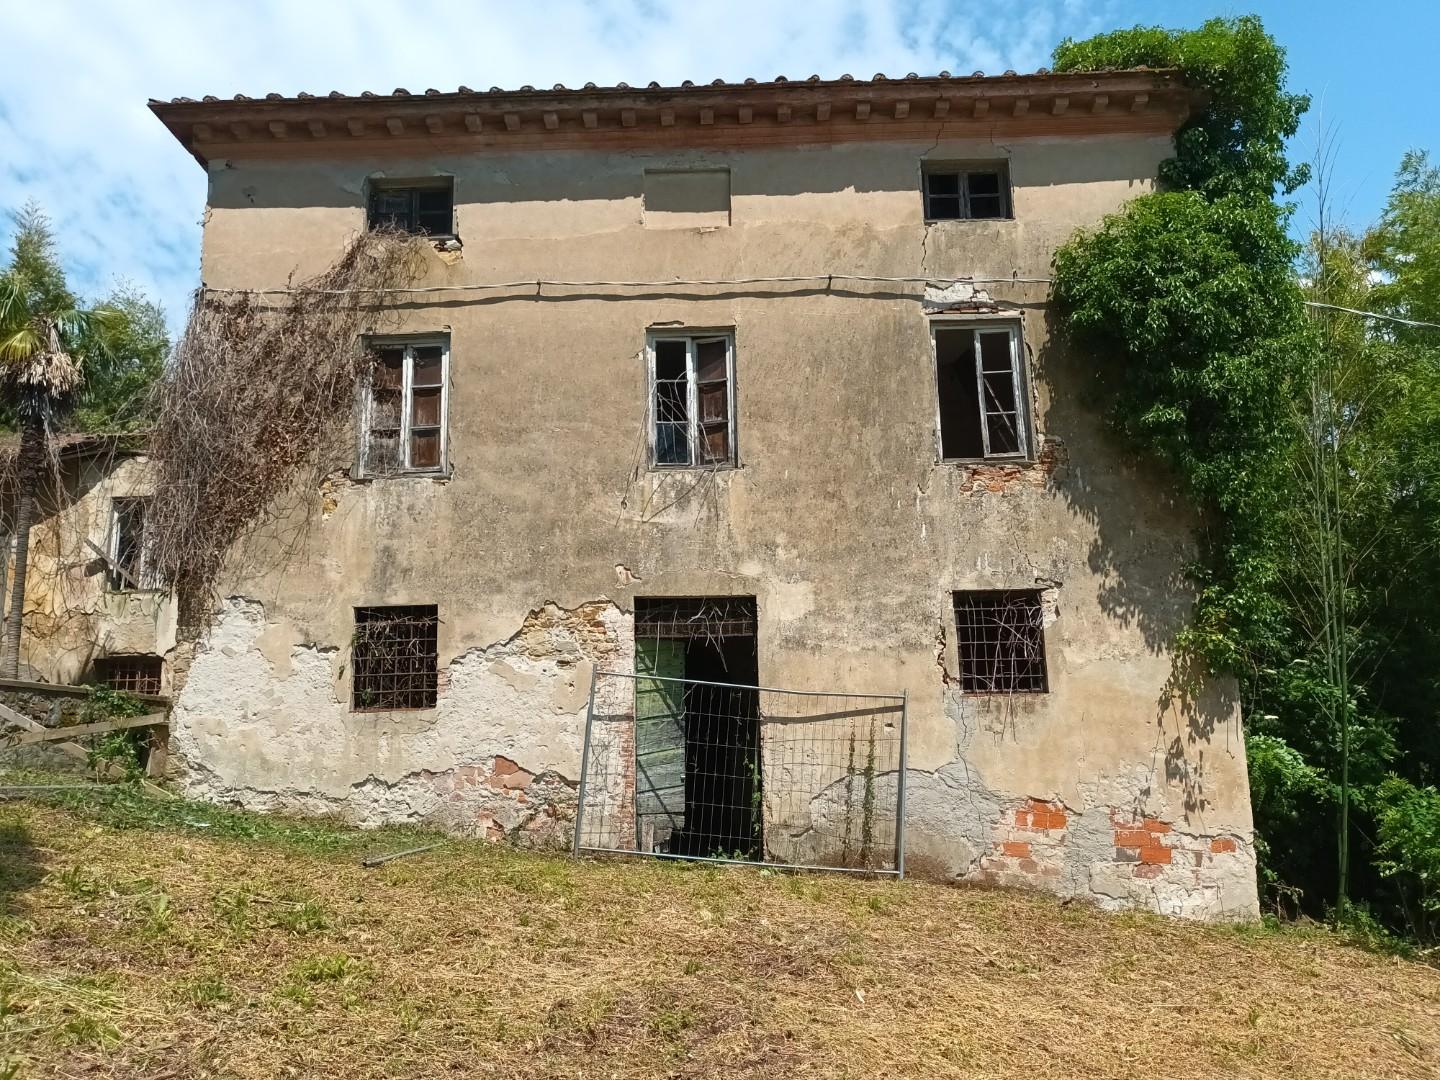 Colonica in vendita - Mastiano, Morianese, Lucca